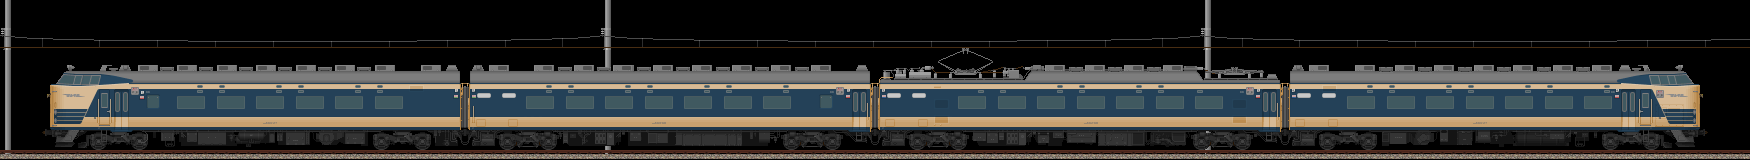 583系特急形電車(クハネ583組込)